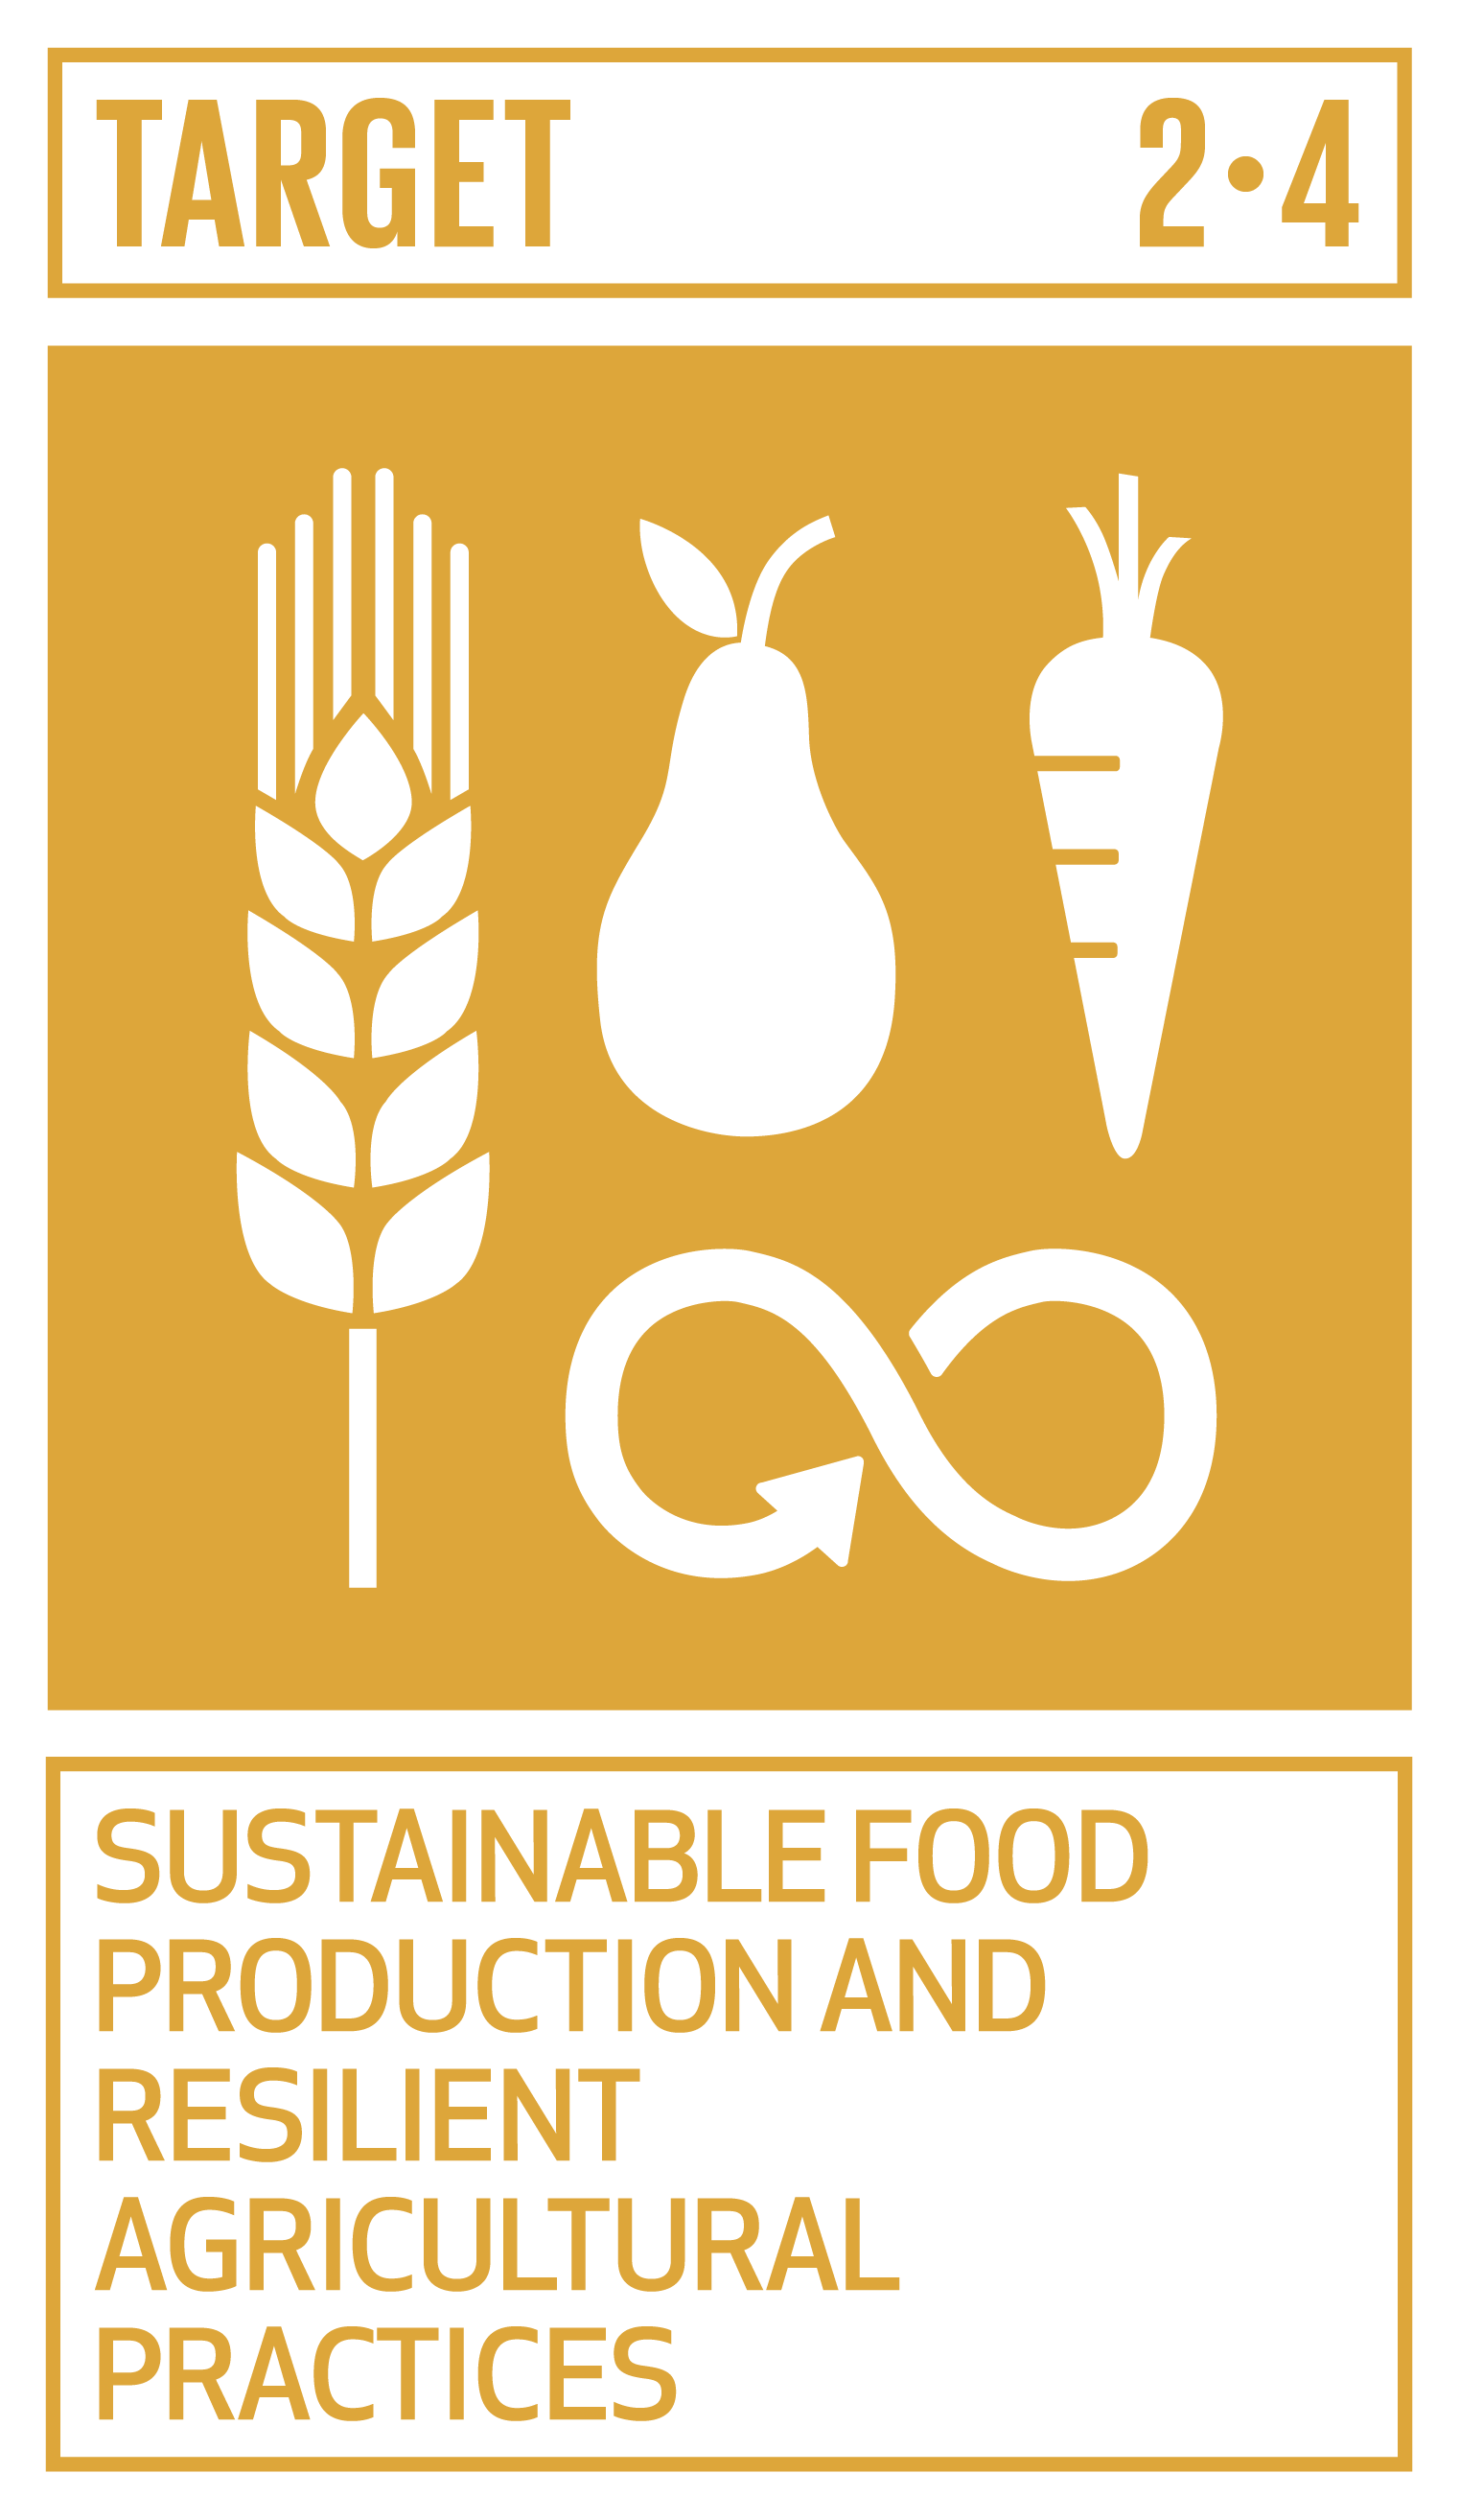 Goal,target,永續發展目標SDGs2目標2.4永續糧食生產和彈性農業作法